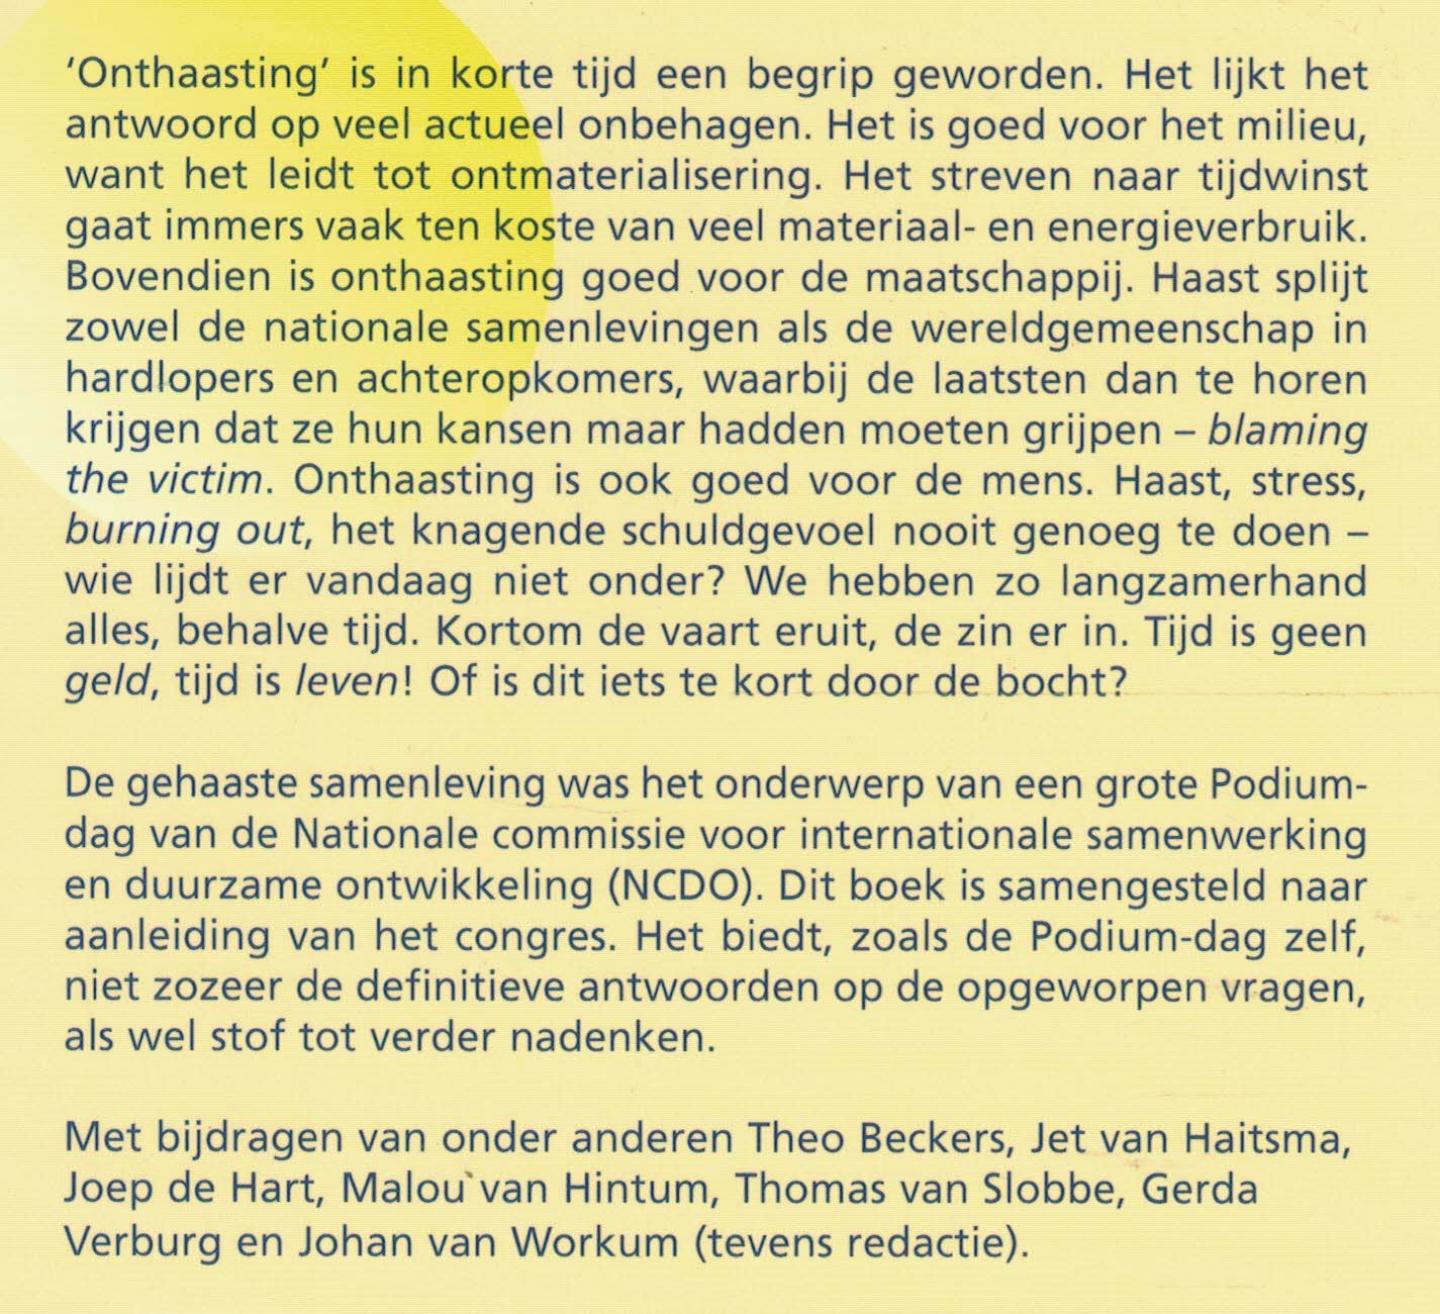 Workum, Johan van (redactie) - Alles, behalve tijd - Bundel naar aanleiding van het NCDO-podium over de gehaaste samenleving